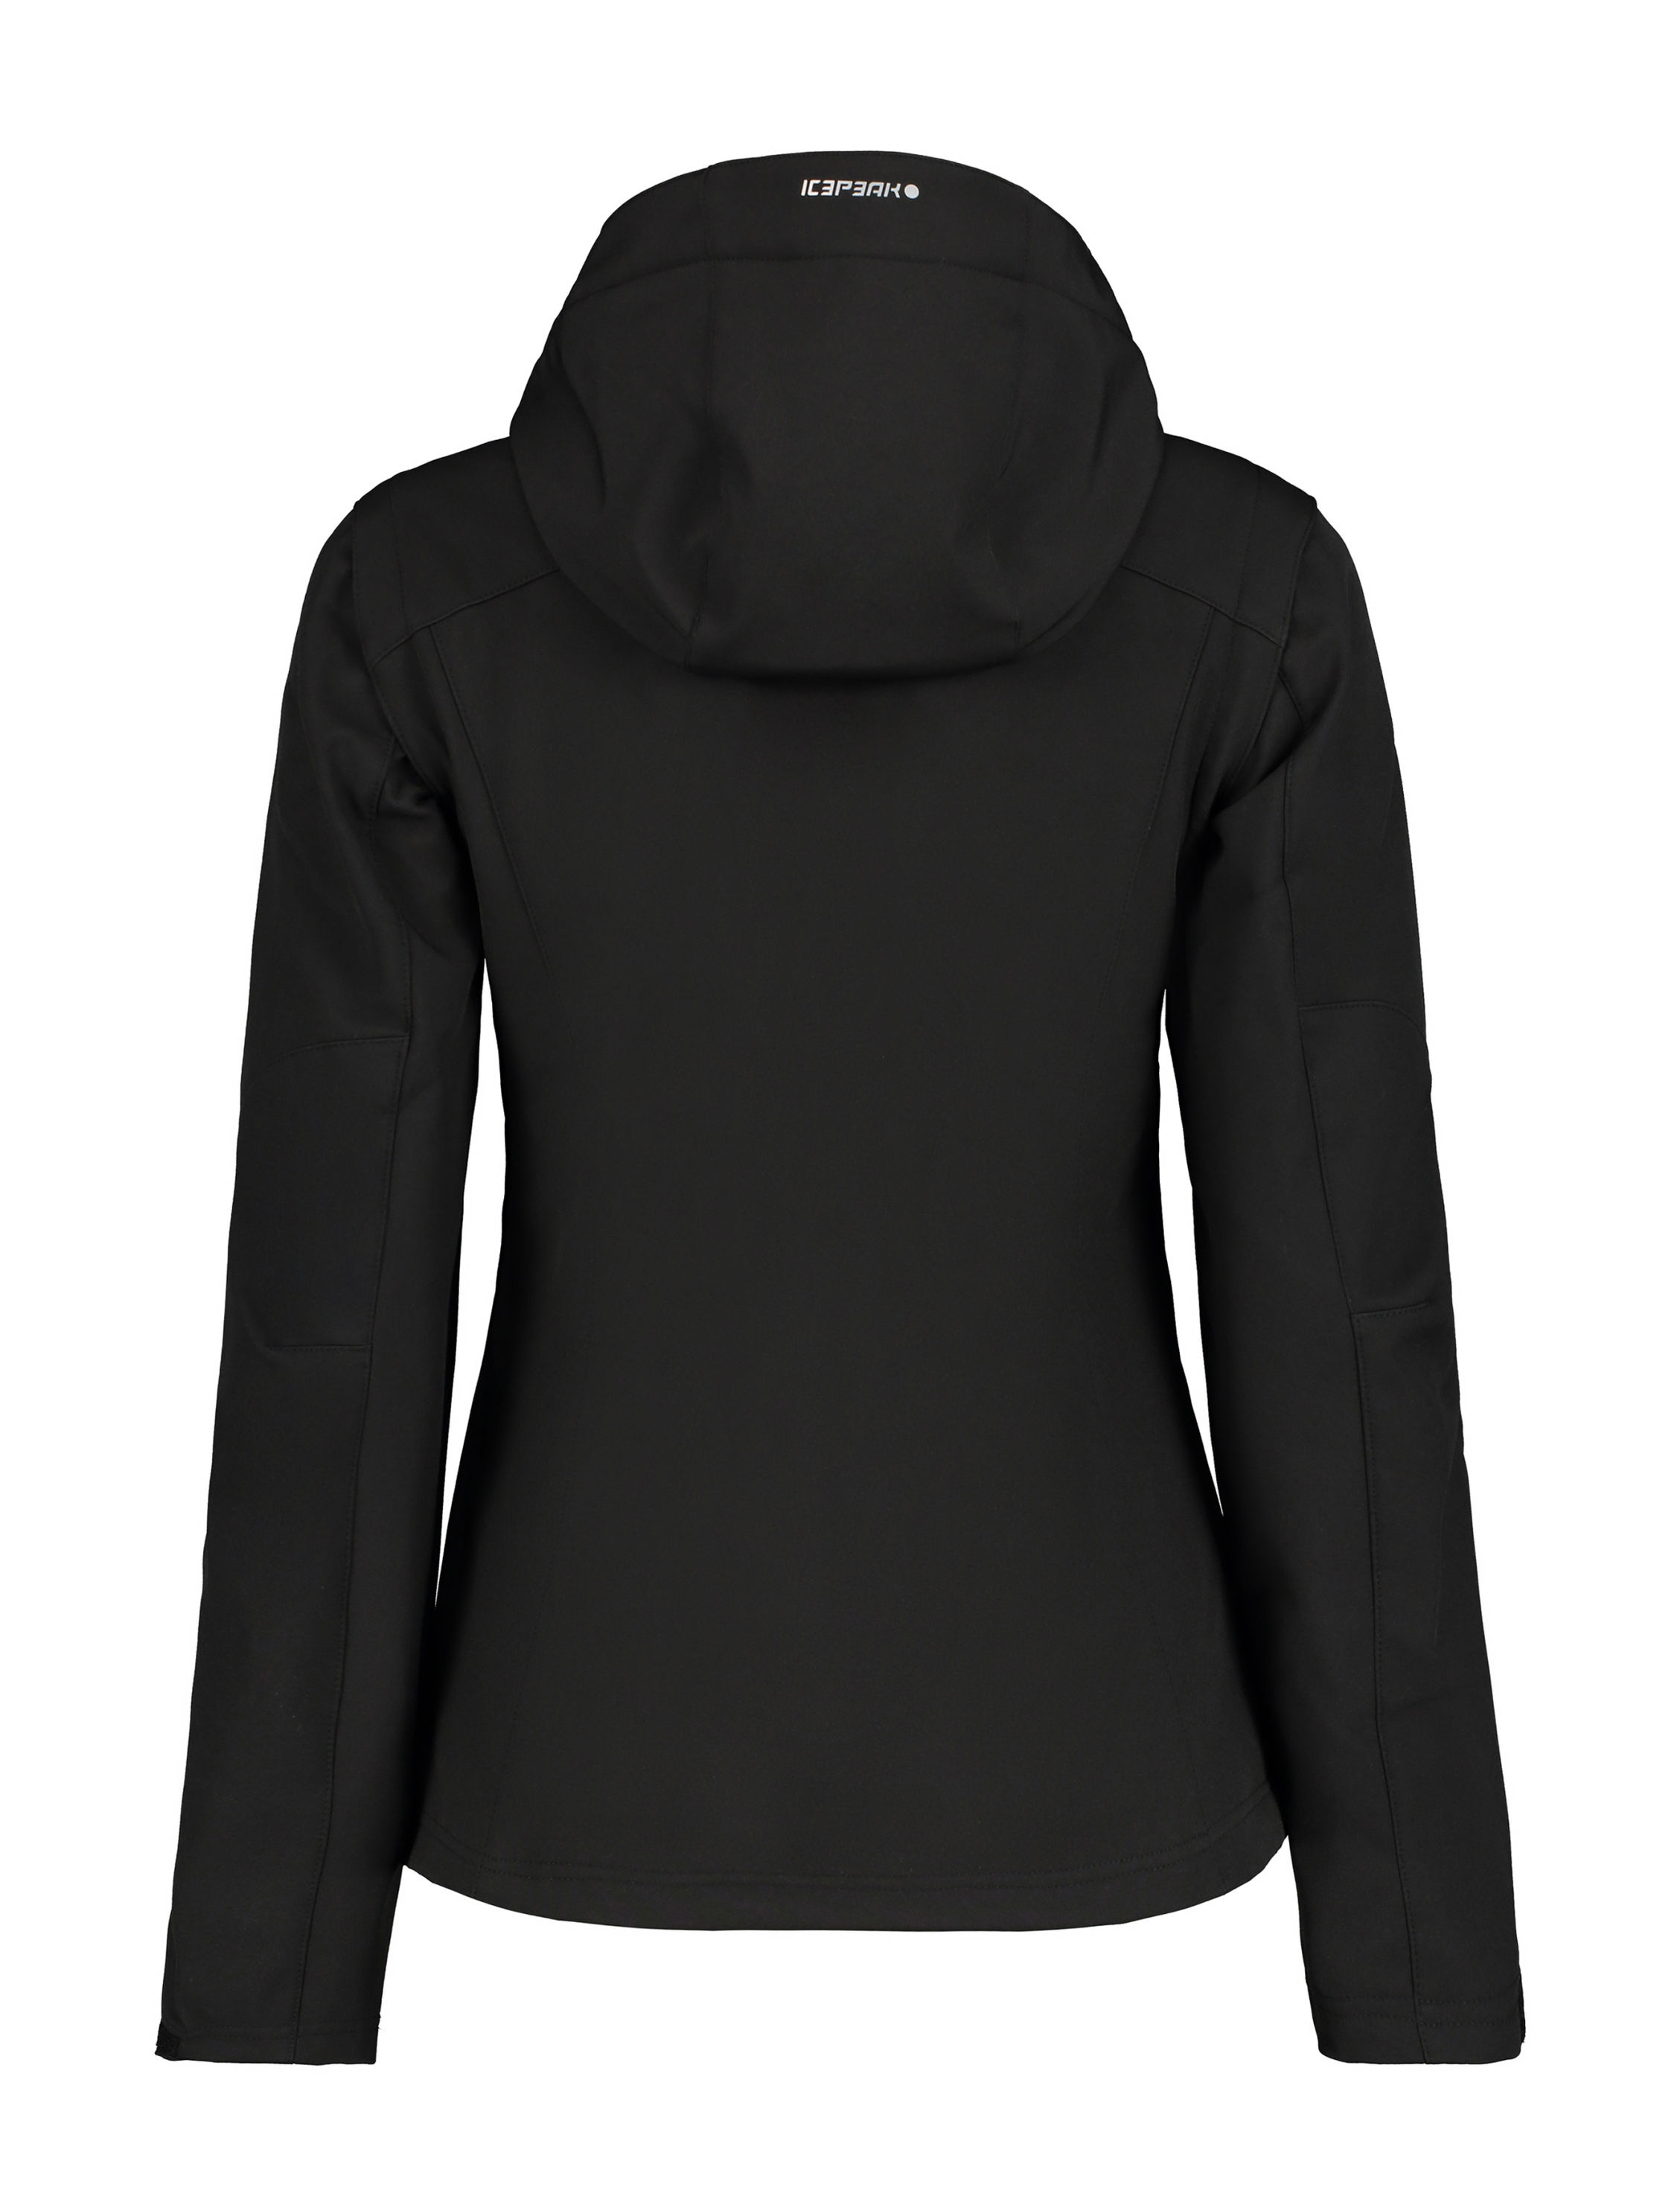 Orbisana kaufen Poipu, 46 Damen Softshelljacke online - ICEPEAK schwarz Größe: